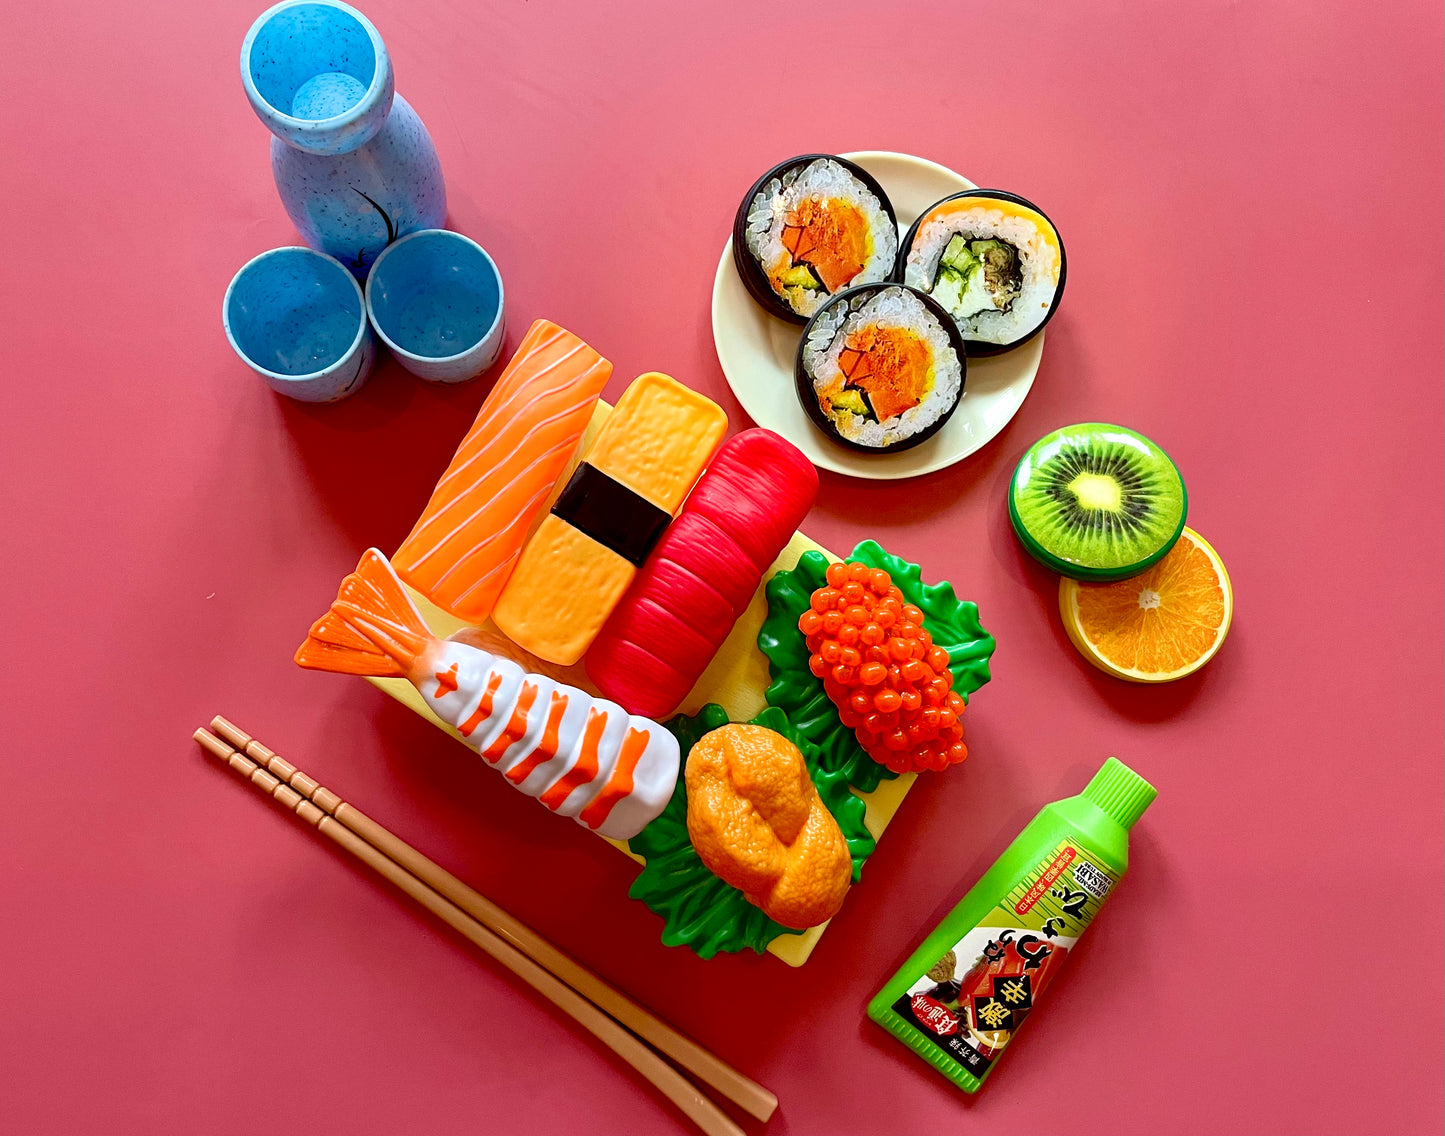 Sushi-ya